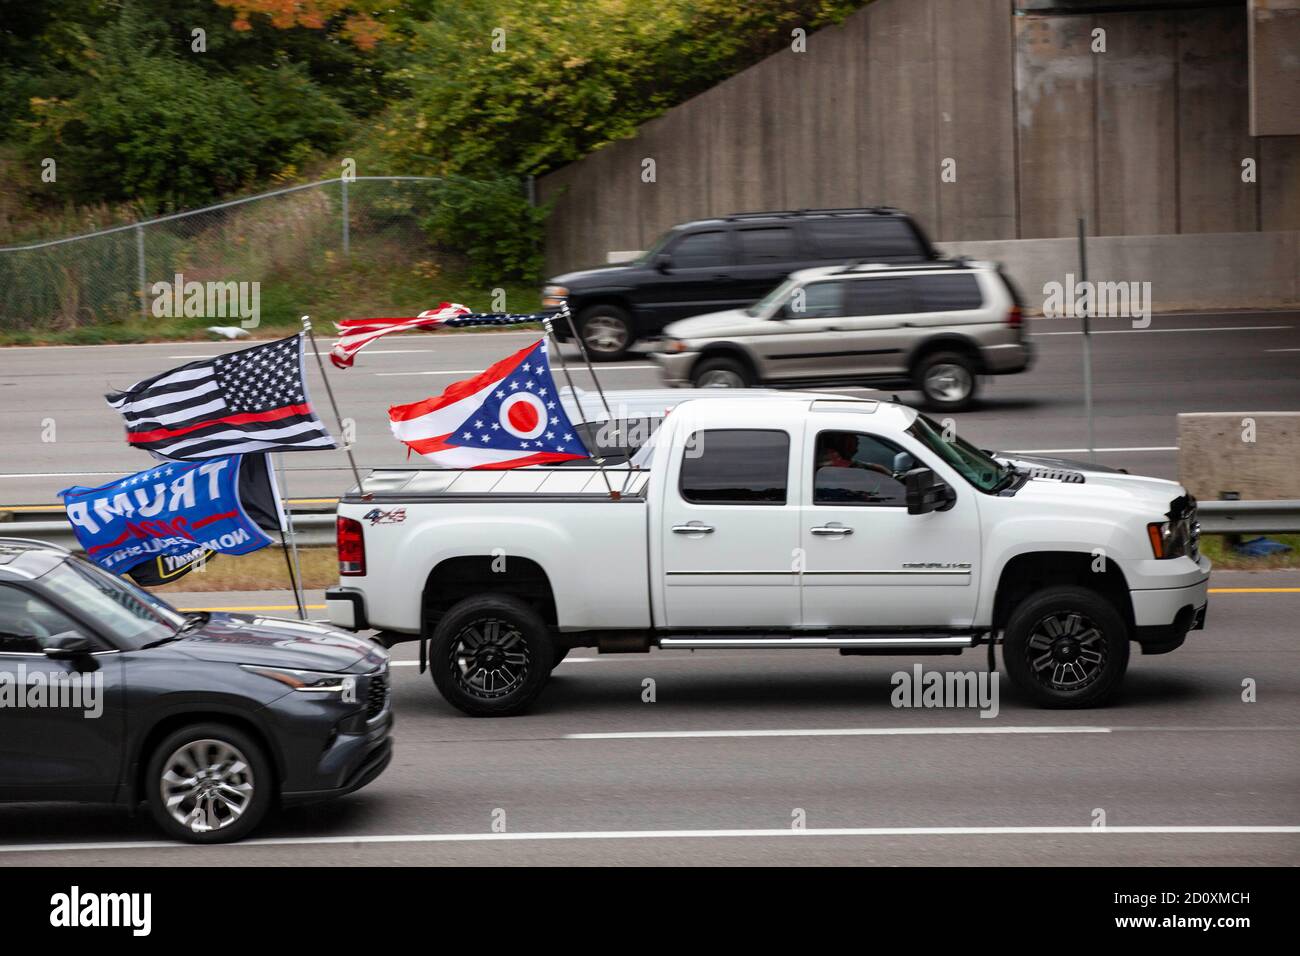 Il partecipante alla Trump Parade vola più bandiere dalla parte posteriore del proprio camion, compresa una bandiera dell'Ohio. I sostenitori di Trump si sono mostrati in gran numero sulla i-270 in un evento chiamato Trump Parade. Durante questo evento, i sostenitori di Trump hanno guidato la i-270, l’autostrada che circonda Columbus, Ohio, dalle 10:00 a mezzogiorno per mostrare il sostegno al presidente Donald Trump durante la stagione elettorale. I partecipanti alla Trump Parade hanno guidato nel vicolo centrale dell'autostrada, e sono stati accolti con il sostegno dei cavalcavia e dei compagni di guida. L'evento ha ricevuto un'opposizione minima. Foto Stock